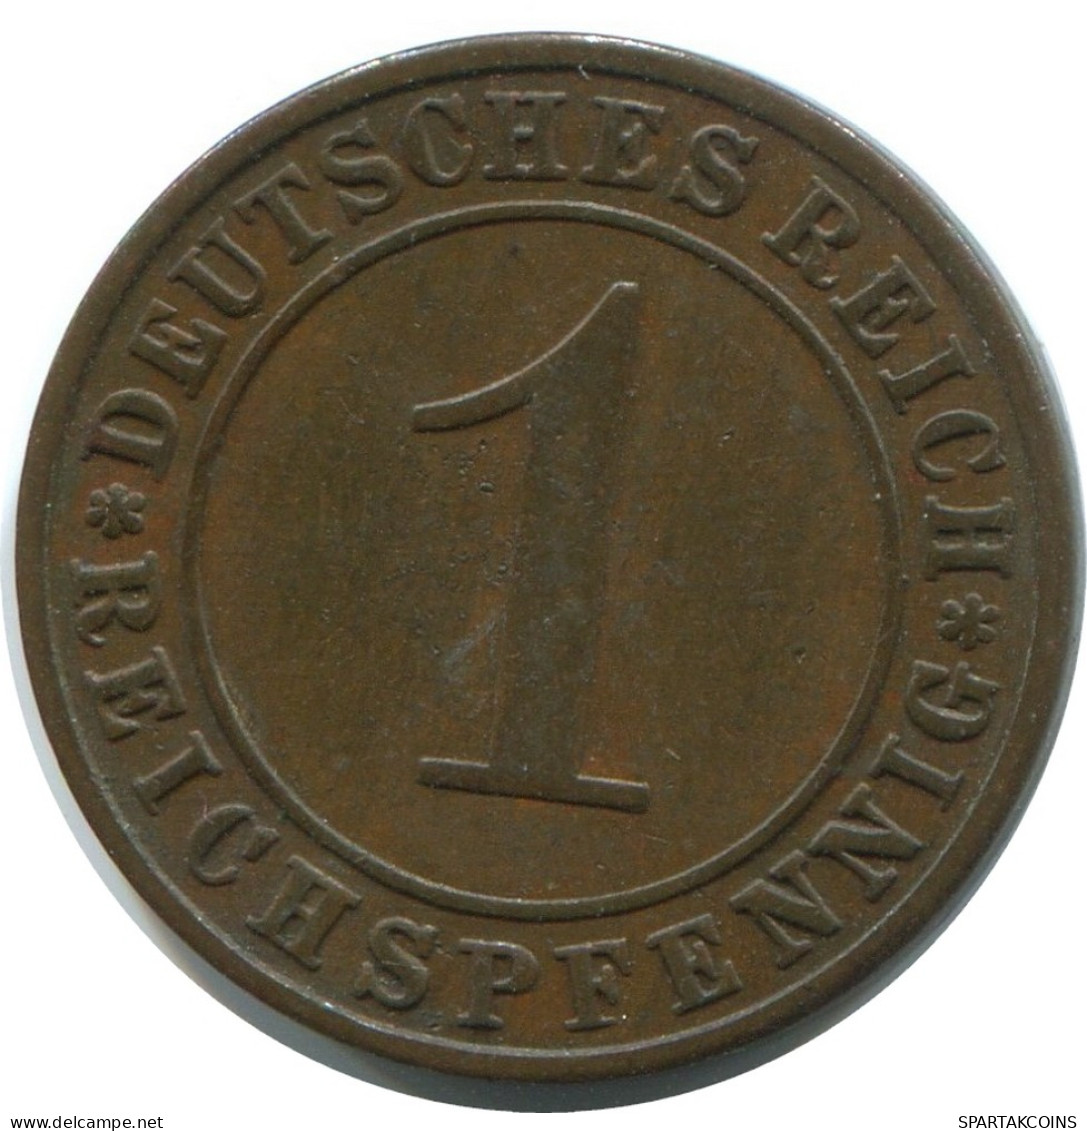 1 REICHSPFENNIG 1927 E ALLEMAGNE Pièce GERMANY #AE209.F - 1 Rentenpfennig & 1 Reichspfennig